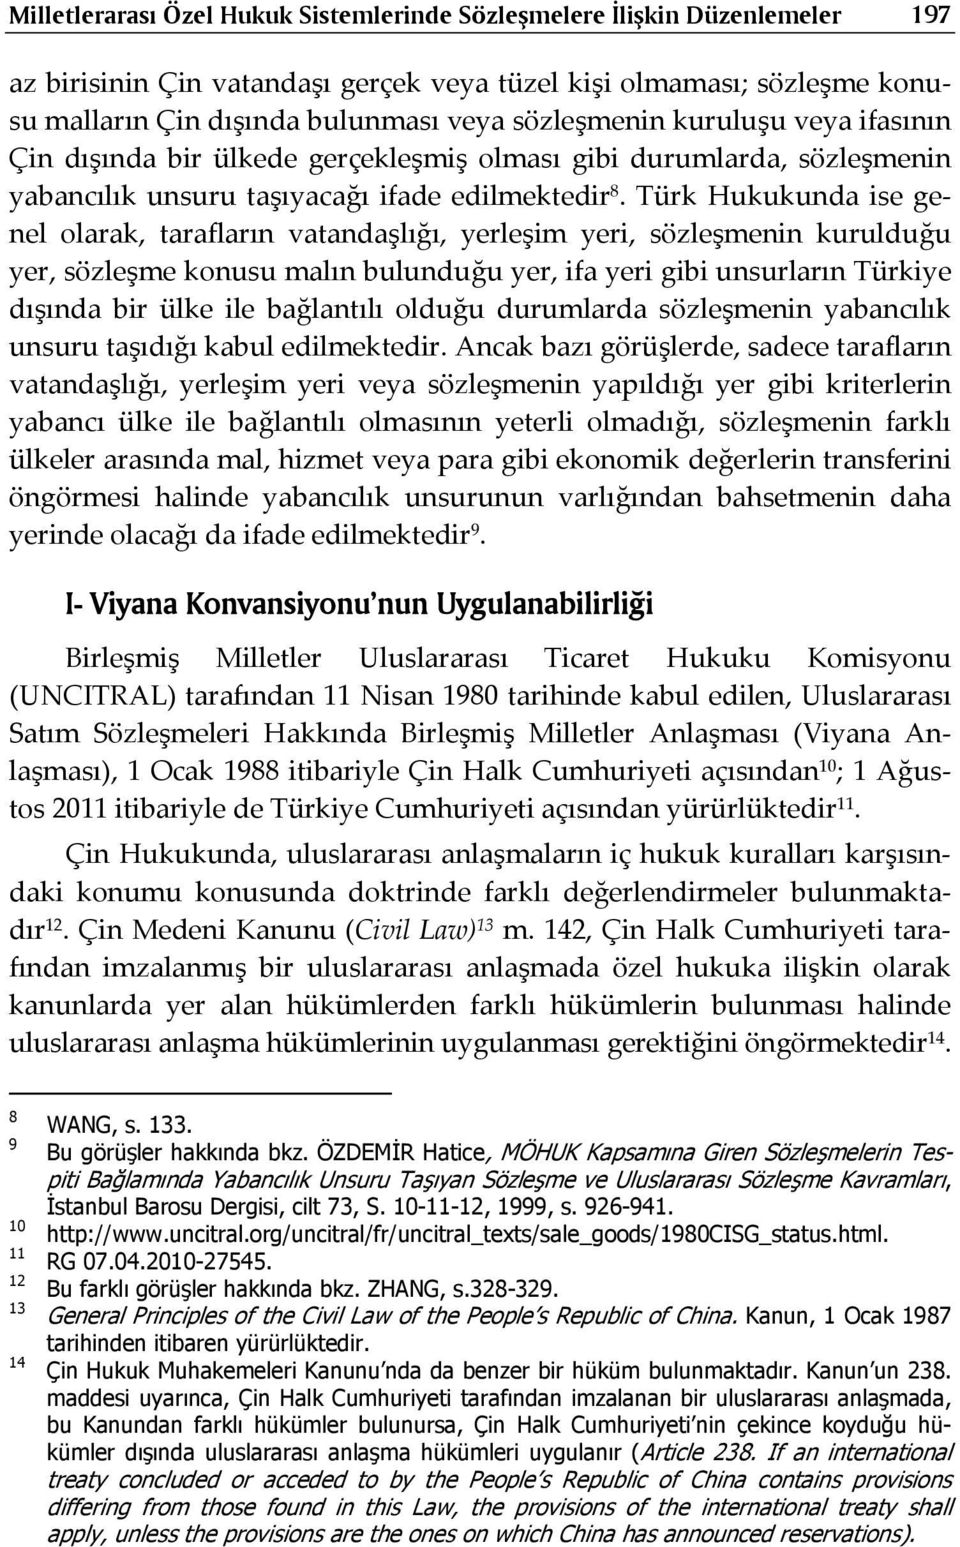 Türk Hukukunda ise genel olarak, tarafların vatandaşlığı, yerleşim yeri, sözleşmenin kurulduğu yer, sözleşme konusu malın bulunduğu yer, ifa yeri gibi unsurların Türkiye dışında bir ülke ile